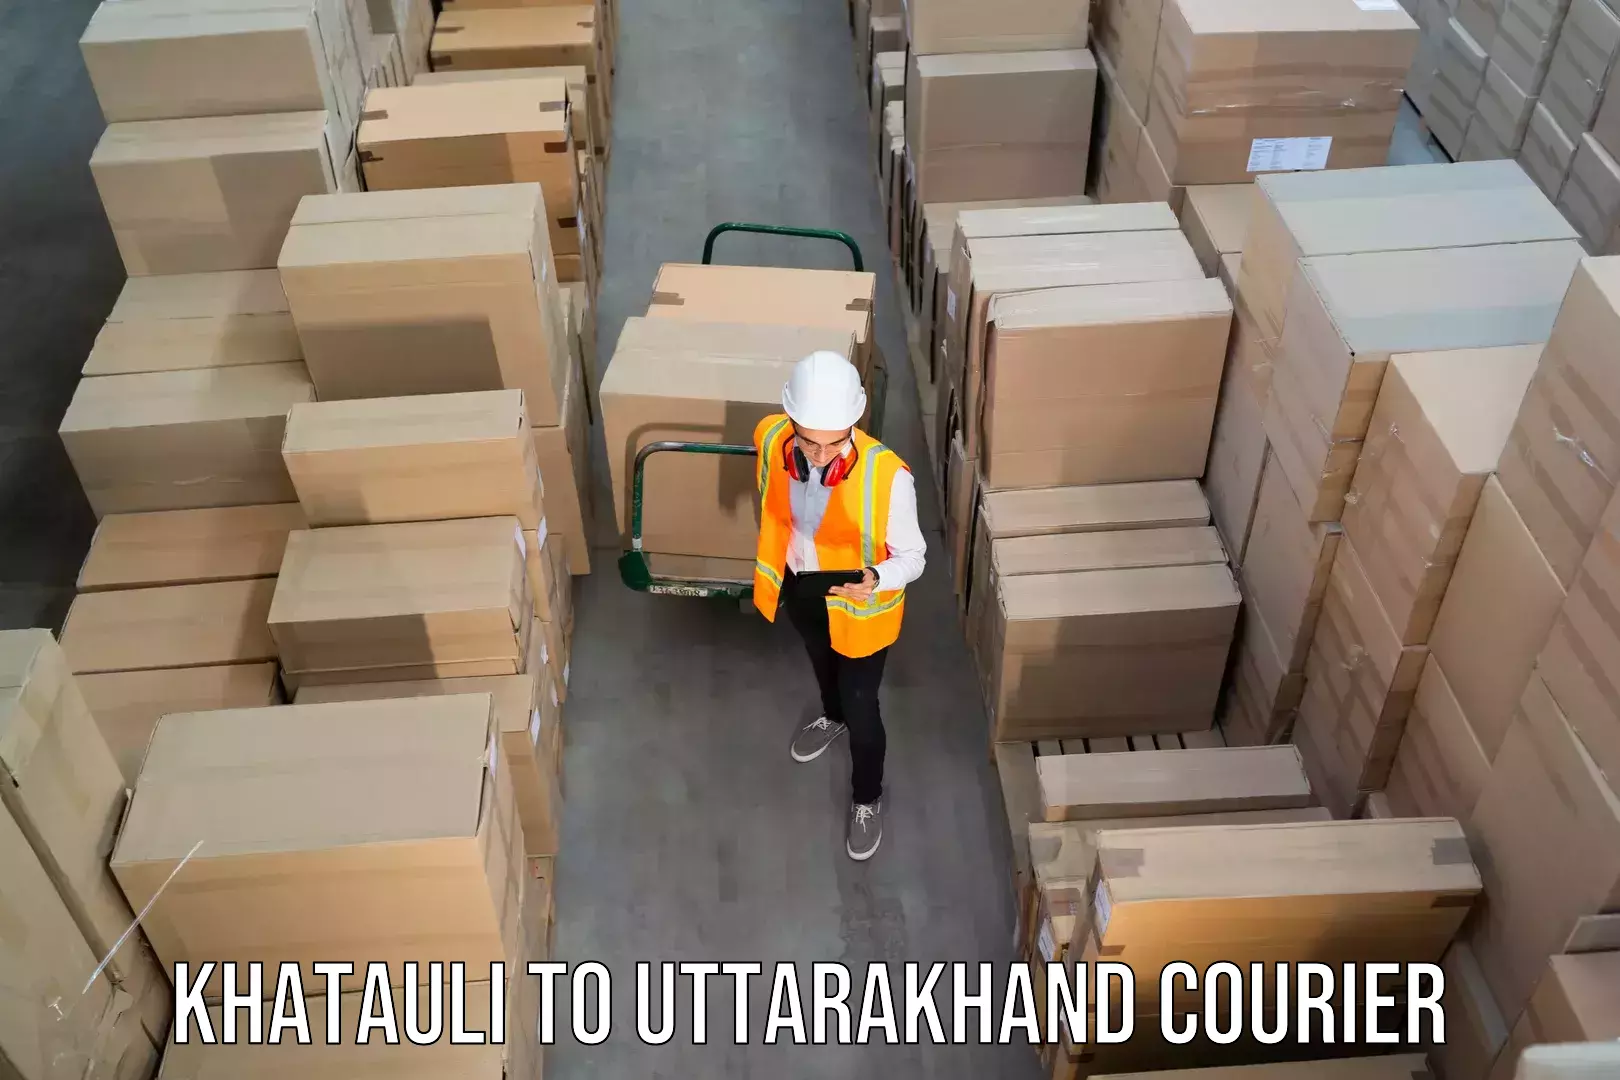 Nationwide courier service Khatauli to Uttarakhand